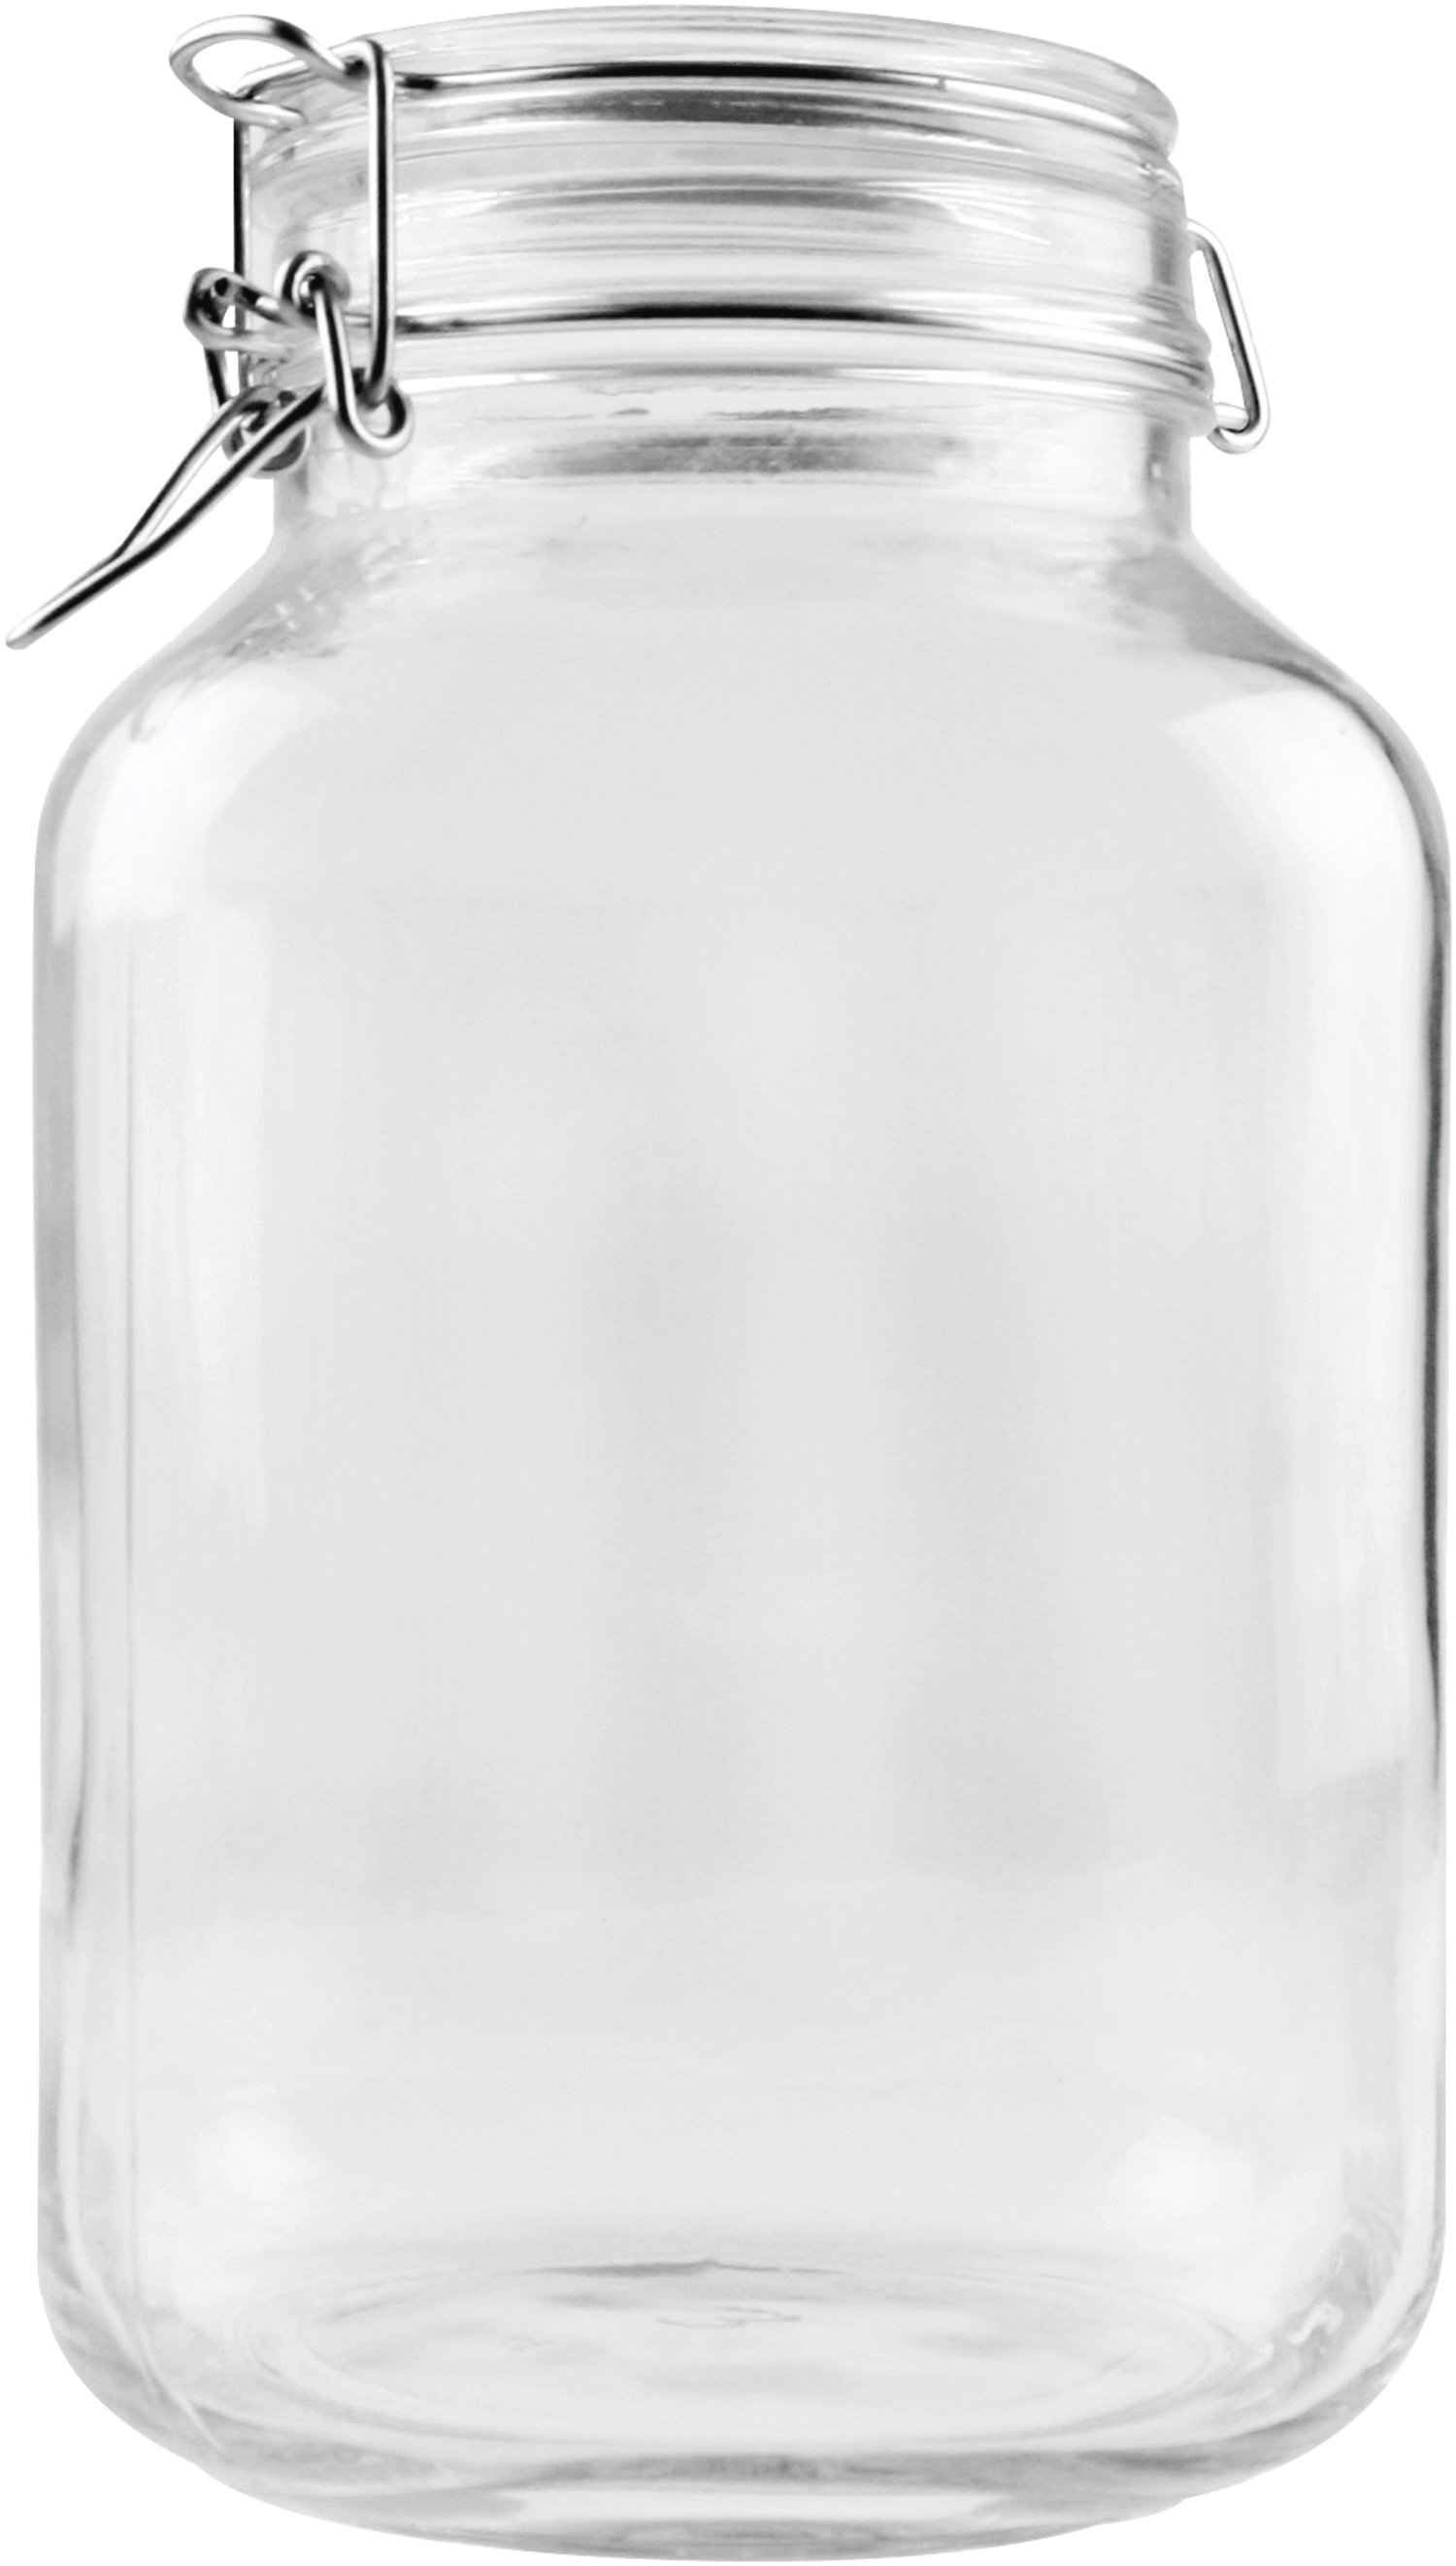 Drahtbügelglas Einkochglas Einweckglas 3 Liter 2 x Einmachglas Bügelverschluss 